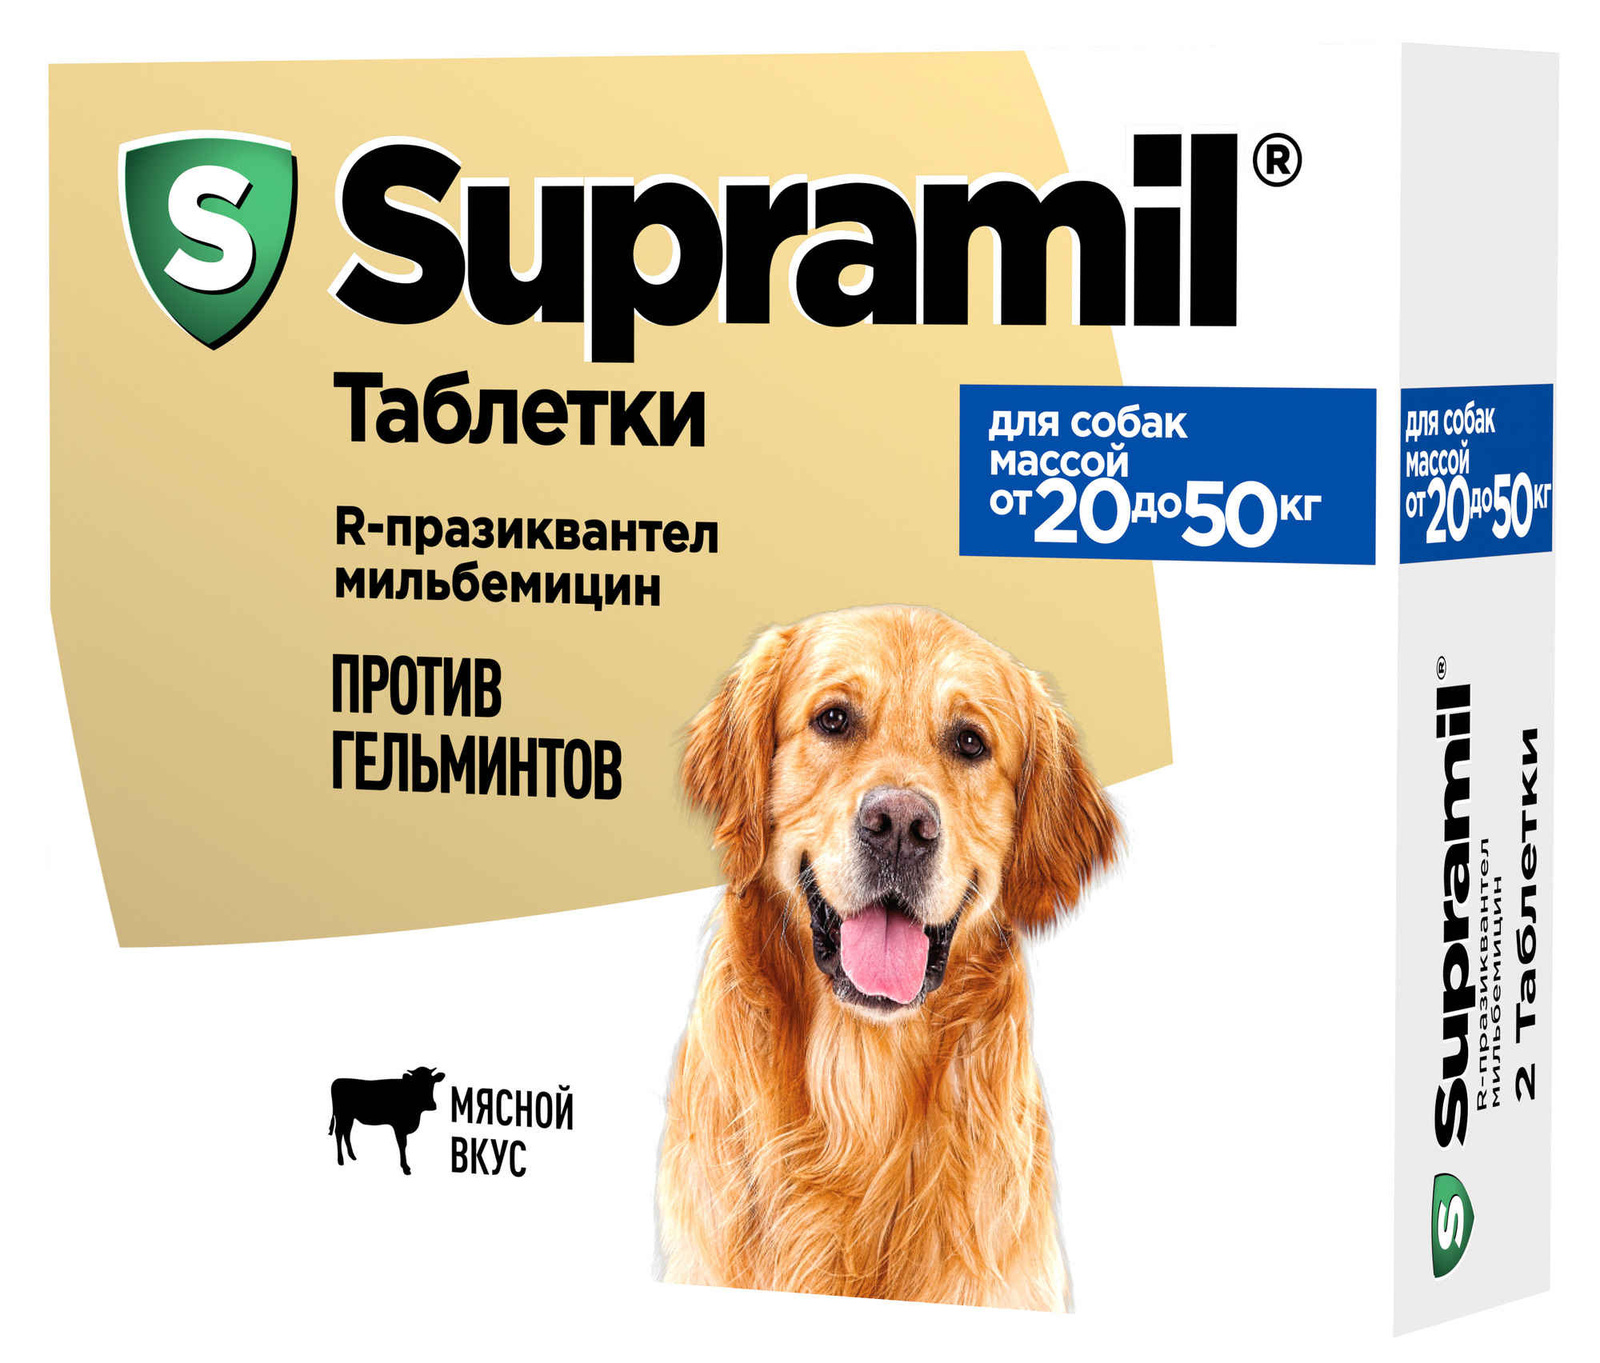 Астрафарм Астрафарм антигельминтный препарат Supramil для щенков и собак массой от 20 до 50 кг, таблетки (20 г) астрафарм астрафарм супрамил эмульсия для щенков и собак от 10 до 25 кг 71 г